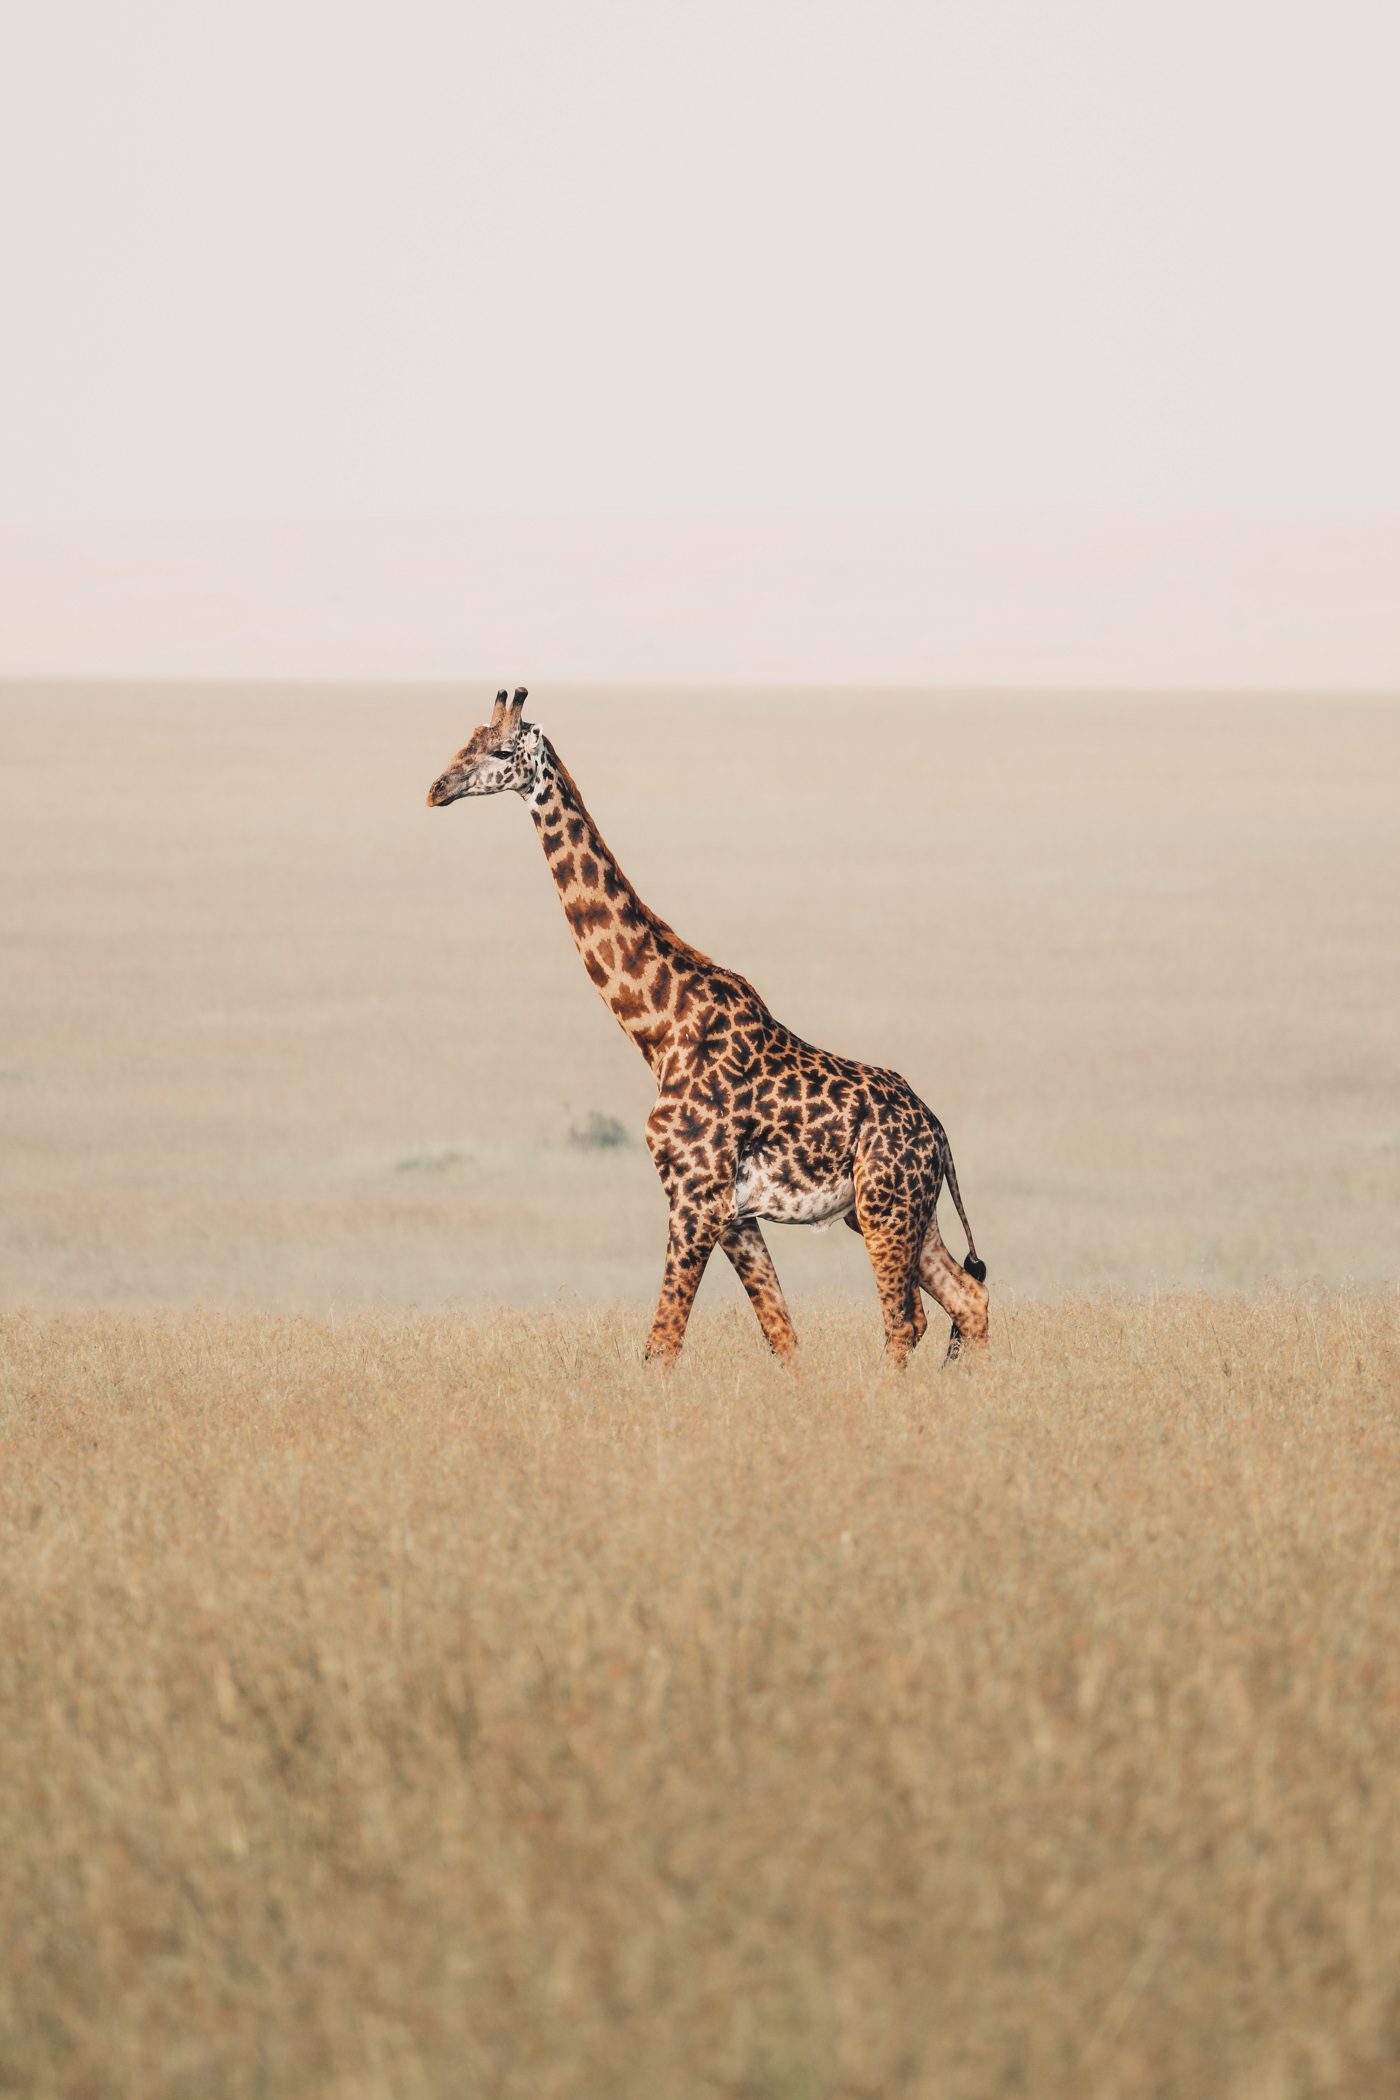 A giraffe in the Maasai Mara